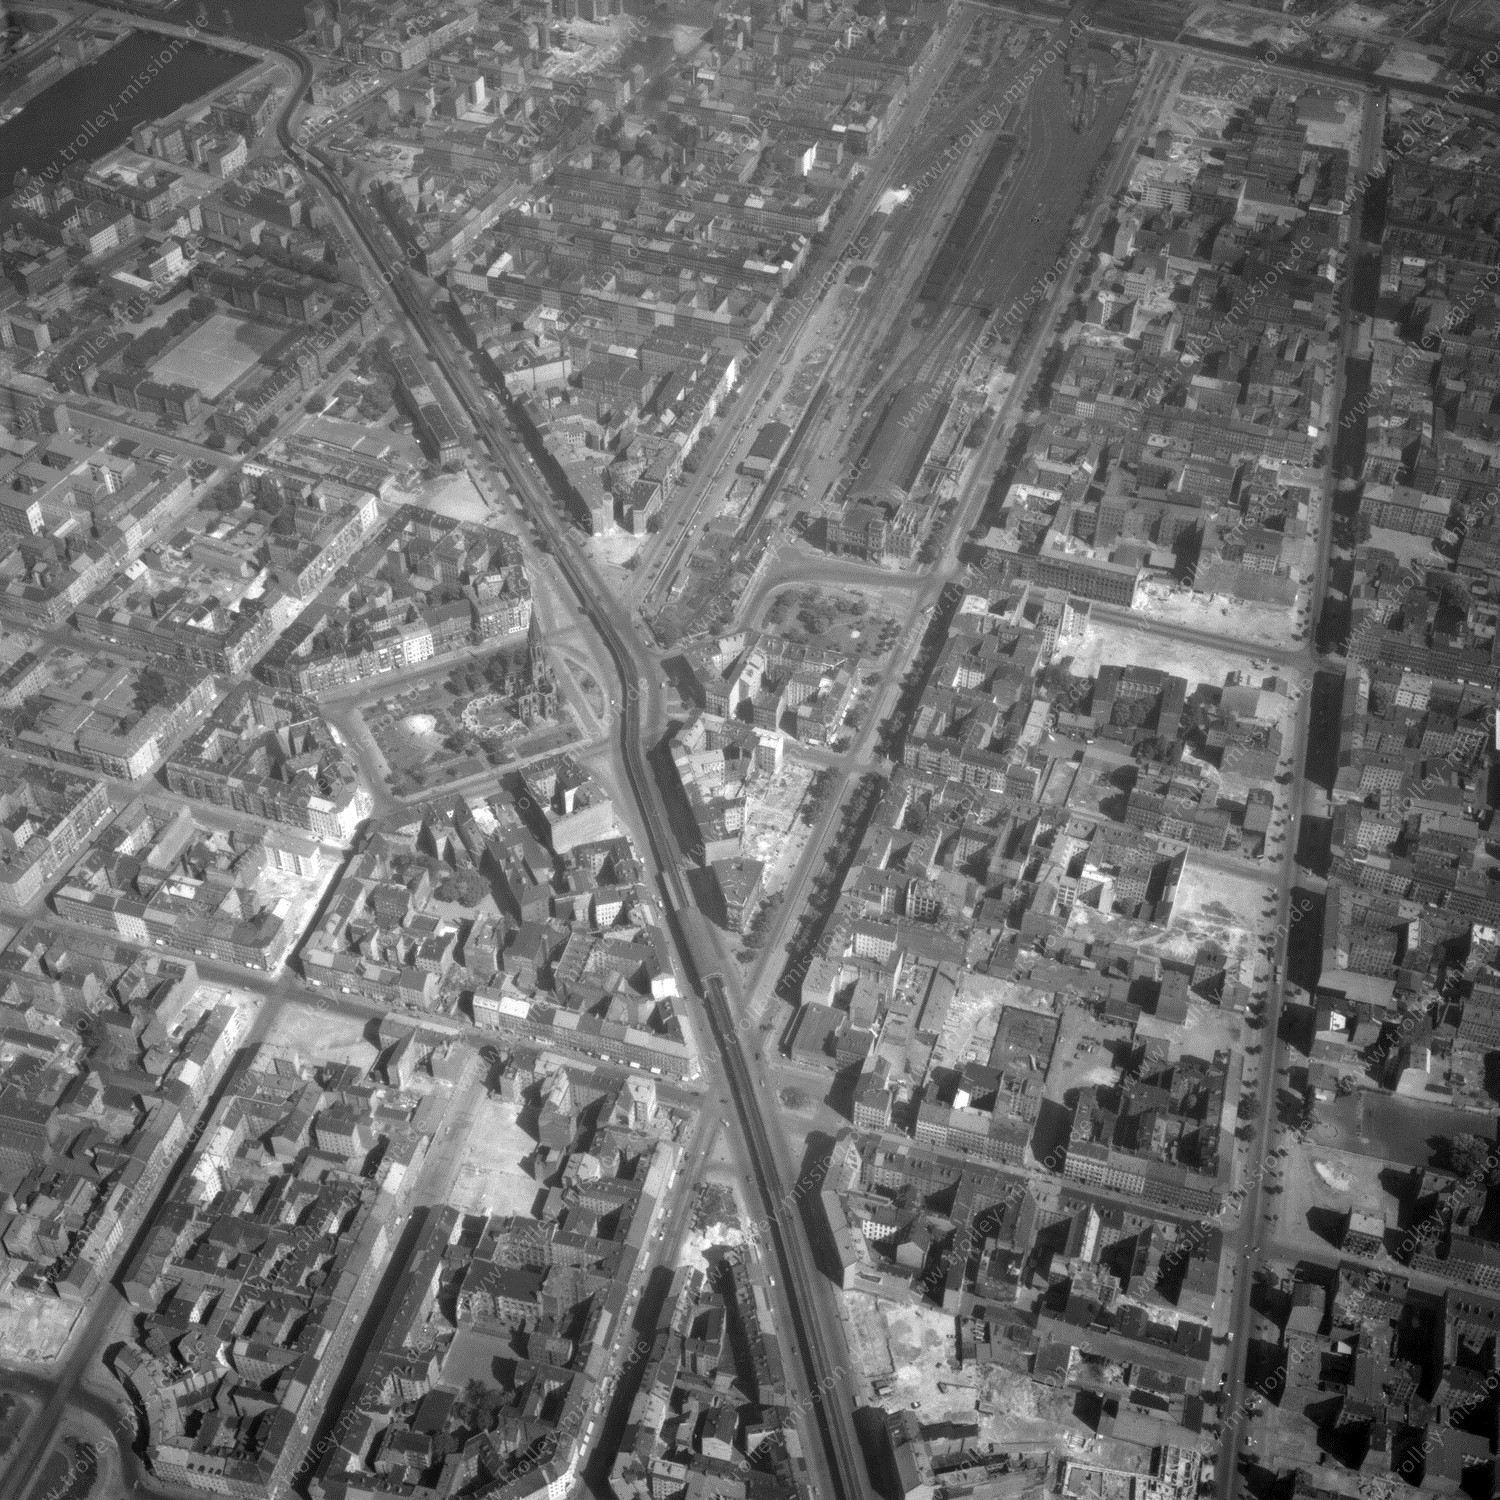 Alte Fotos und Luftbilder von Berlin - Luftbildaufnahme Nr. 07 - Historische Luftaufnahmen von West-Berlin aus dem Jahr 1954 - Flugstrecke Mike